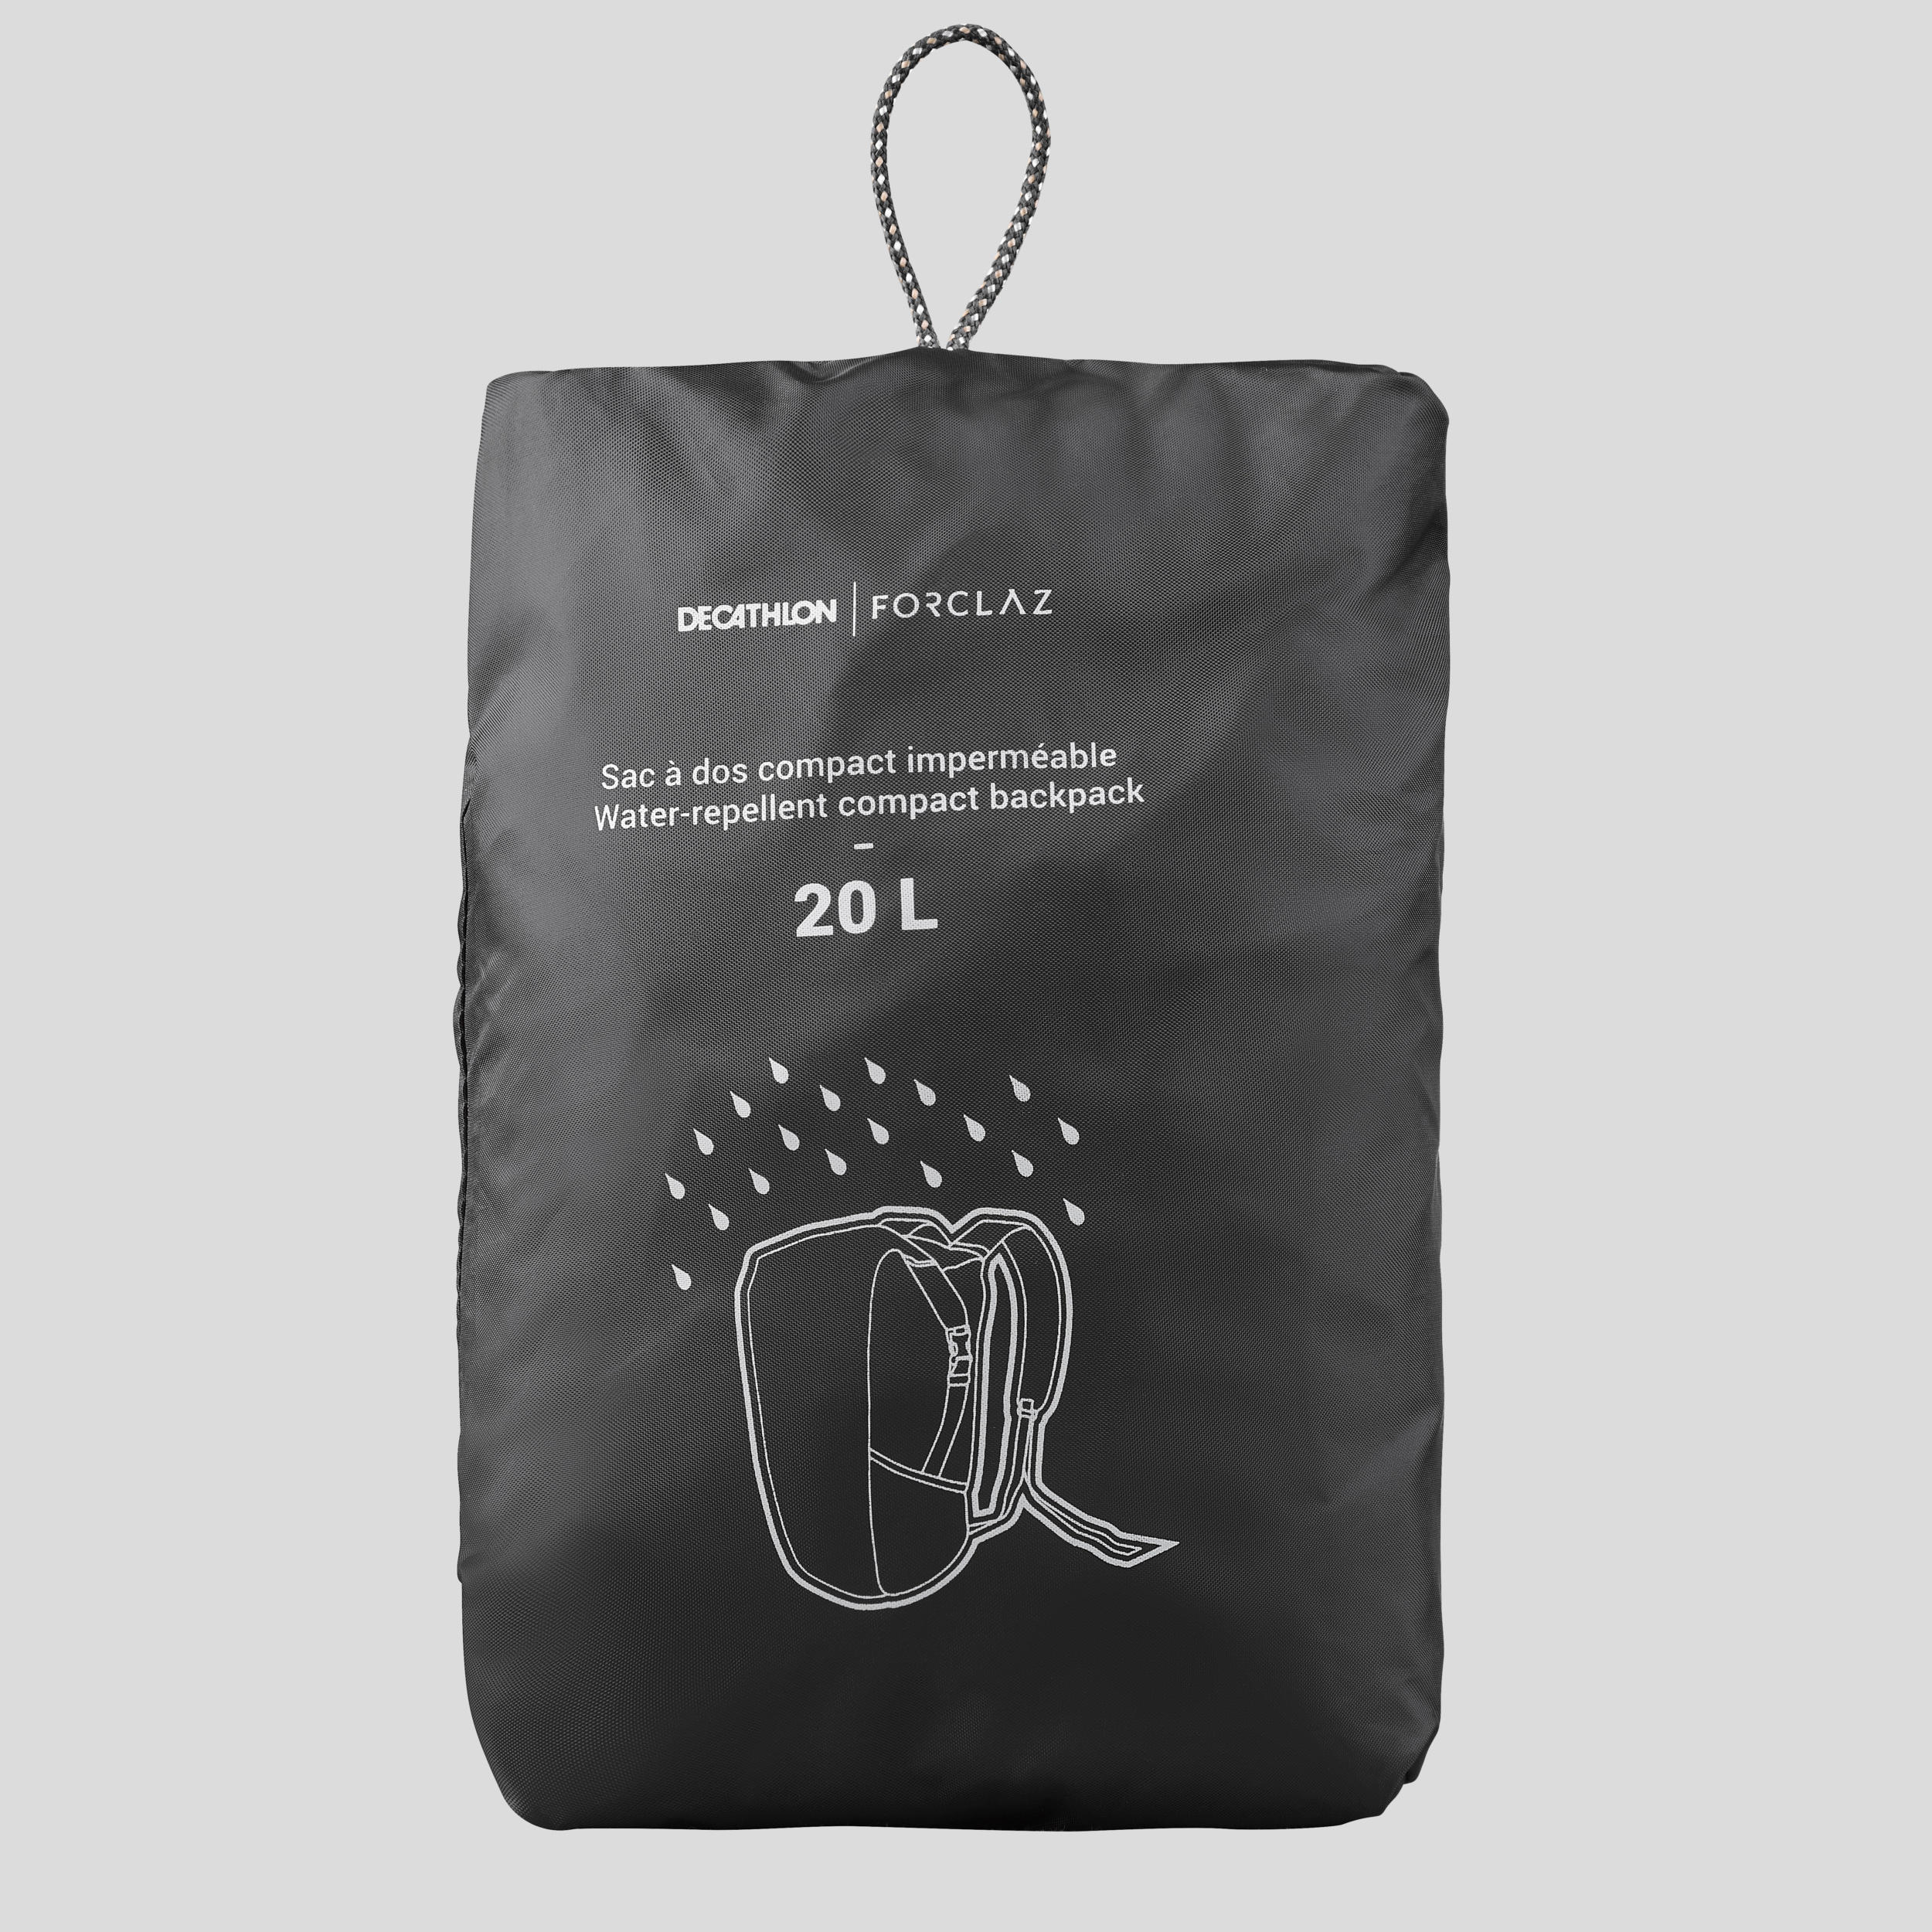 Half-Moon Waterproof Storage Bag 2-Pack - 2x15L